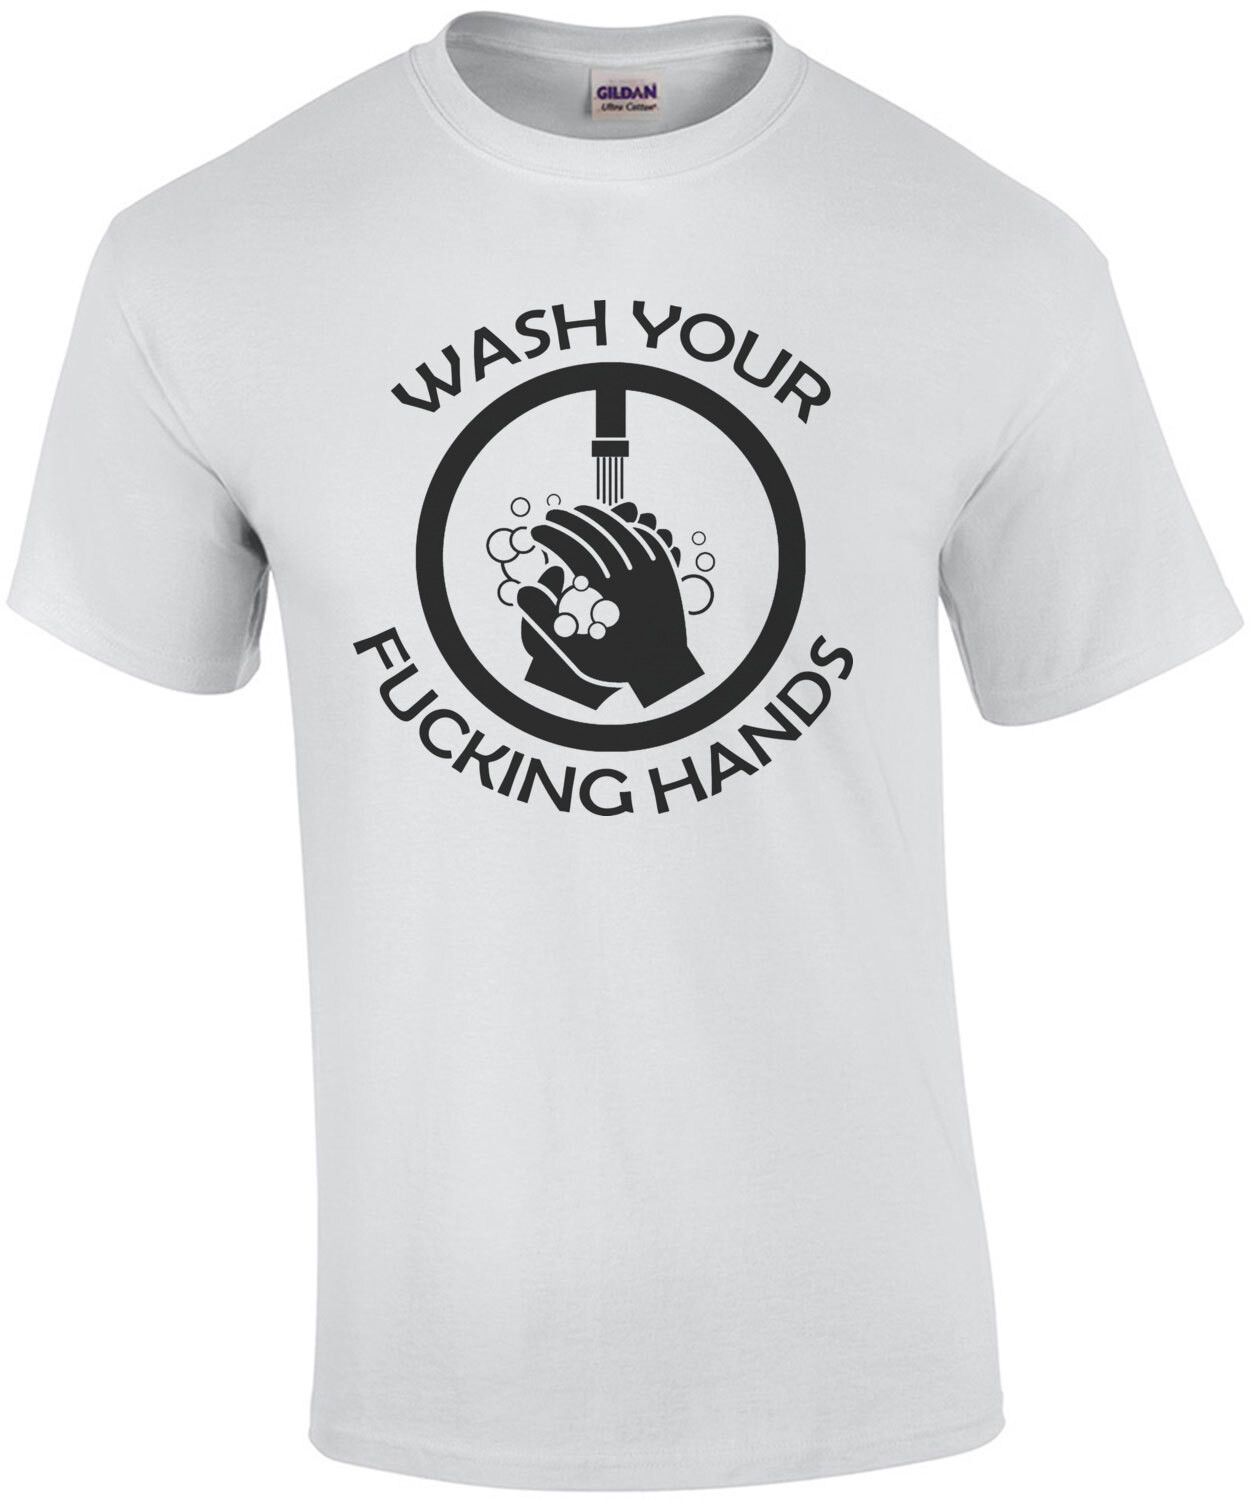 Wash Your Fucking Hands Coronavirus Shirt